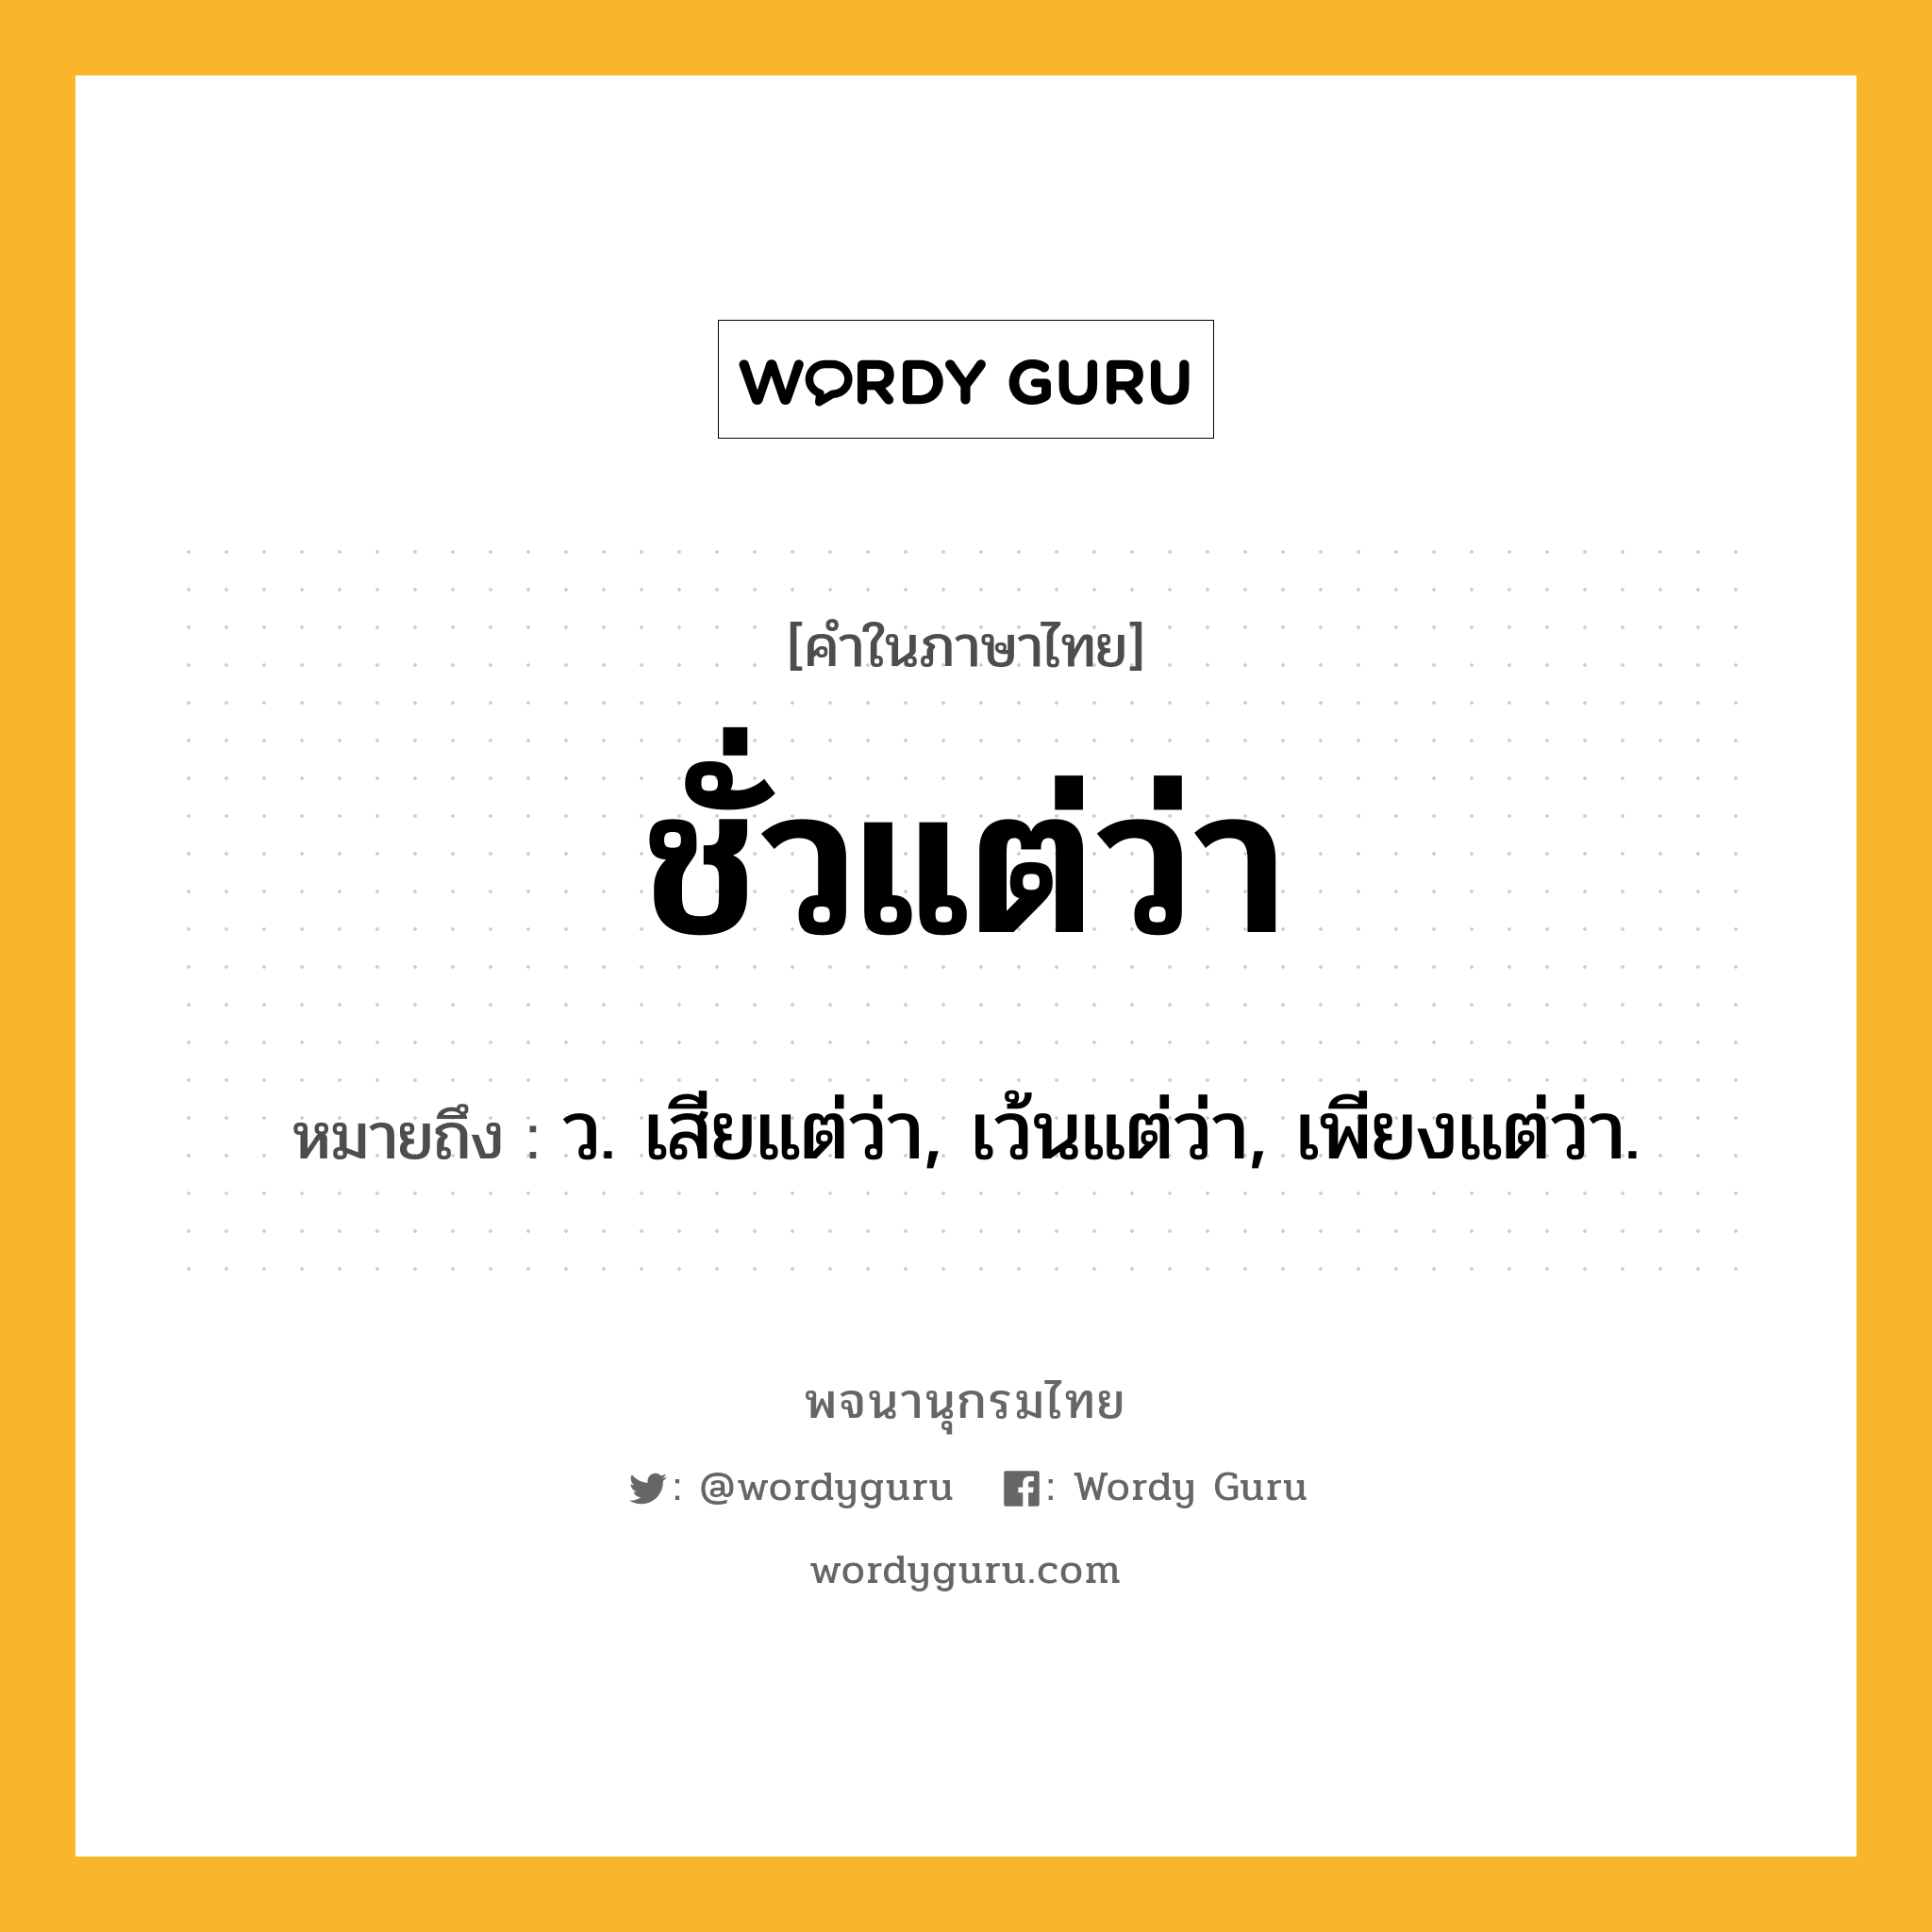 ชั่วแต่ว่า หมายถึงอะไร?, คำในภาษาไทย ชั่วแต่ว่า หมายถึง ว. เสียแต่ว่า, เว้นแต่ว่า, เพียงแต่ว่า.